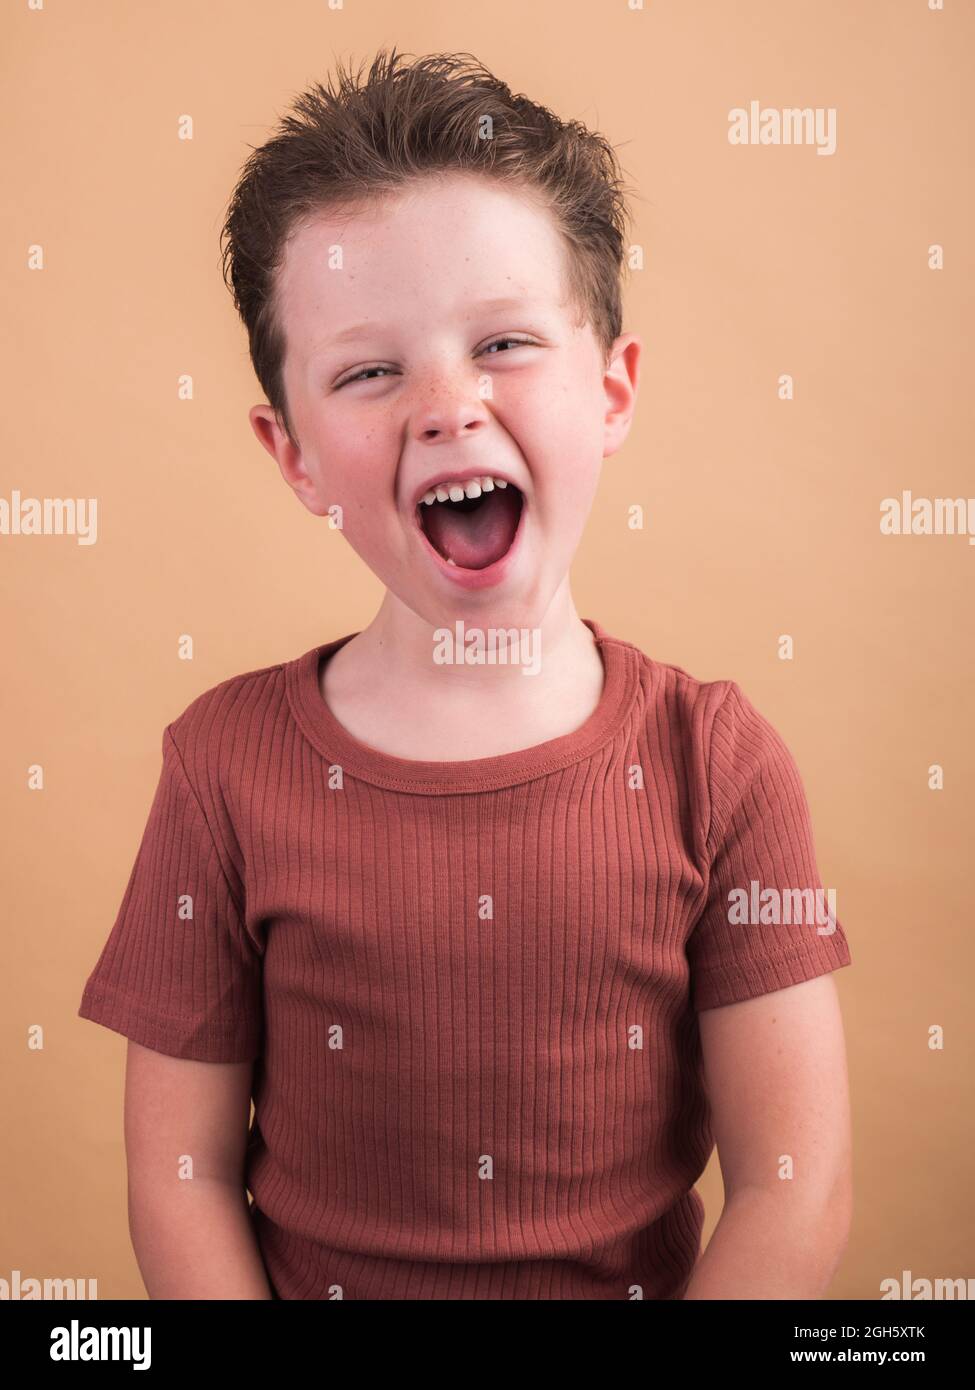 Un enfant satisfait dans des vêtements décontractés avec des cheveux bruns regardant l'appareil photo avec un sourire crasseux et une tête inclinée Banque D'Images